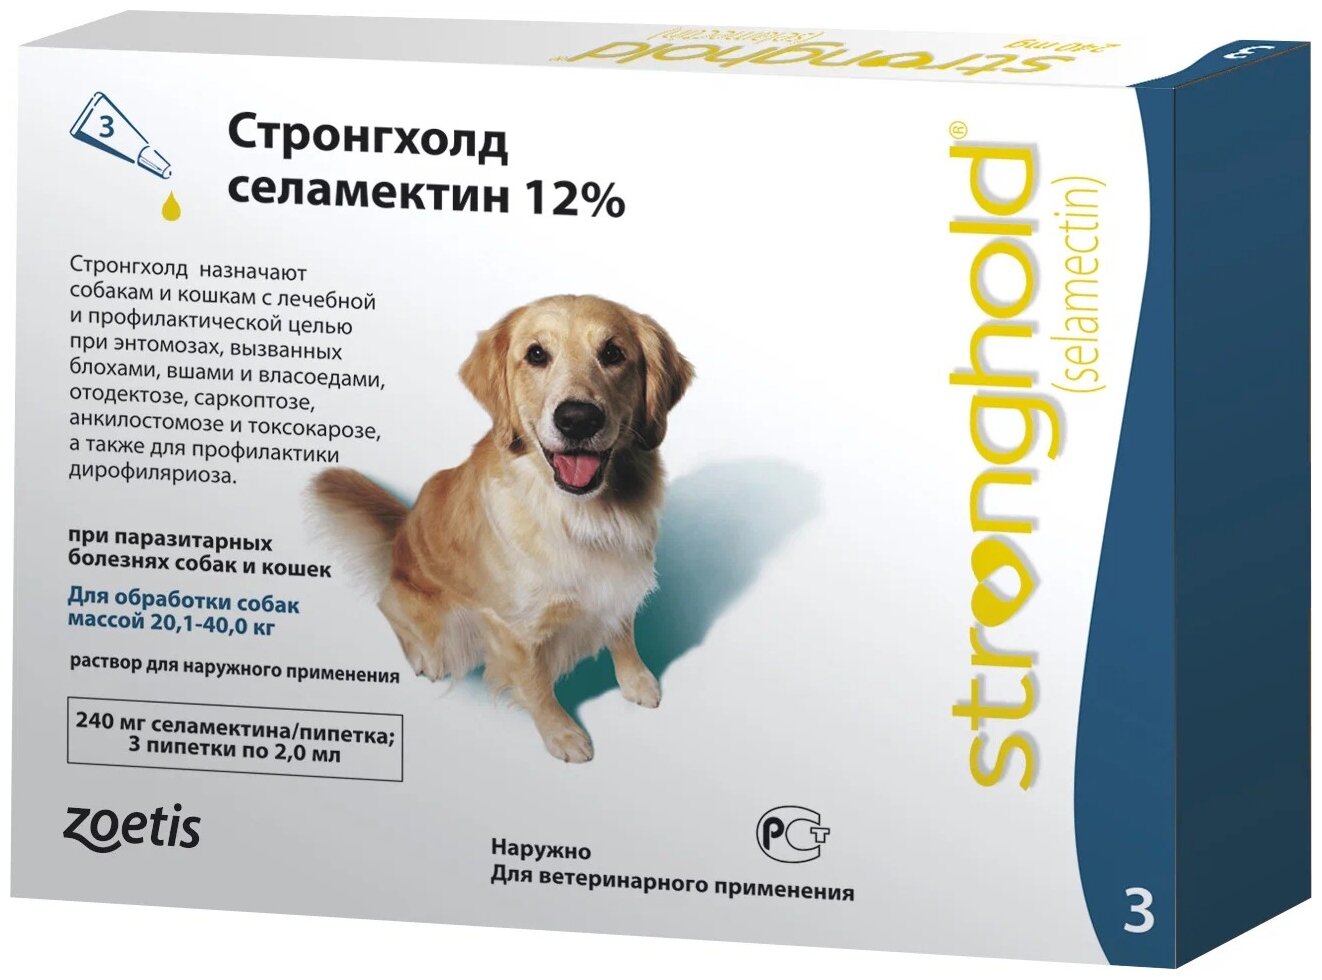 Zoetis Капли от блох клещей и гельминтов Стронгхолд 240 мг для собак массой 201-40 кг